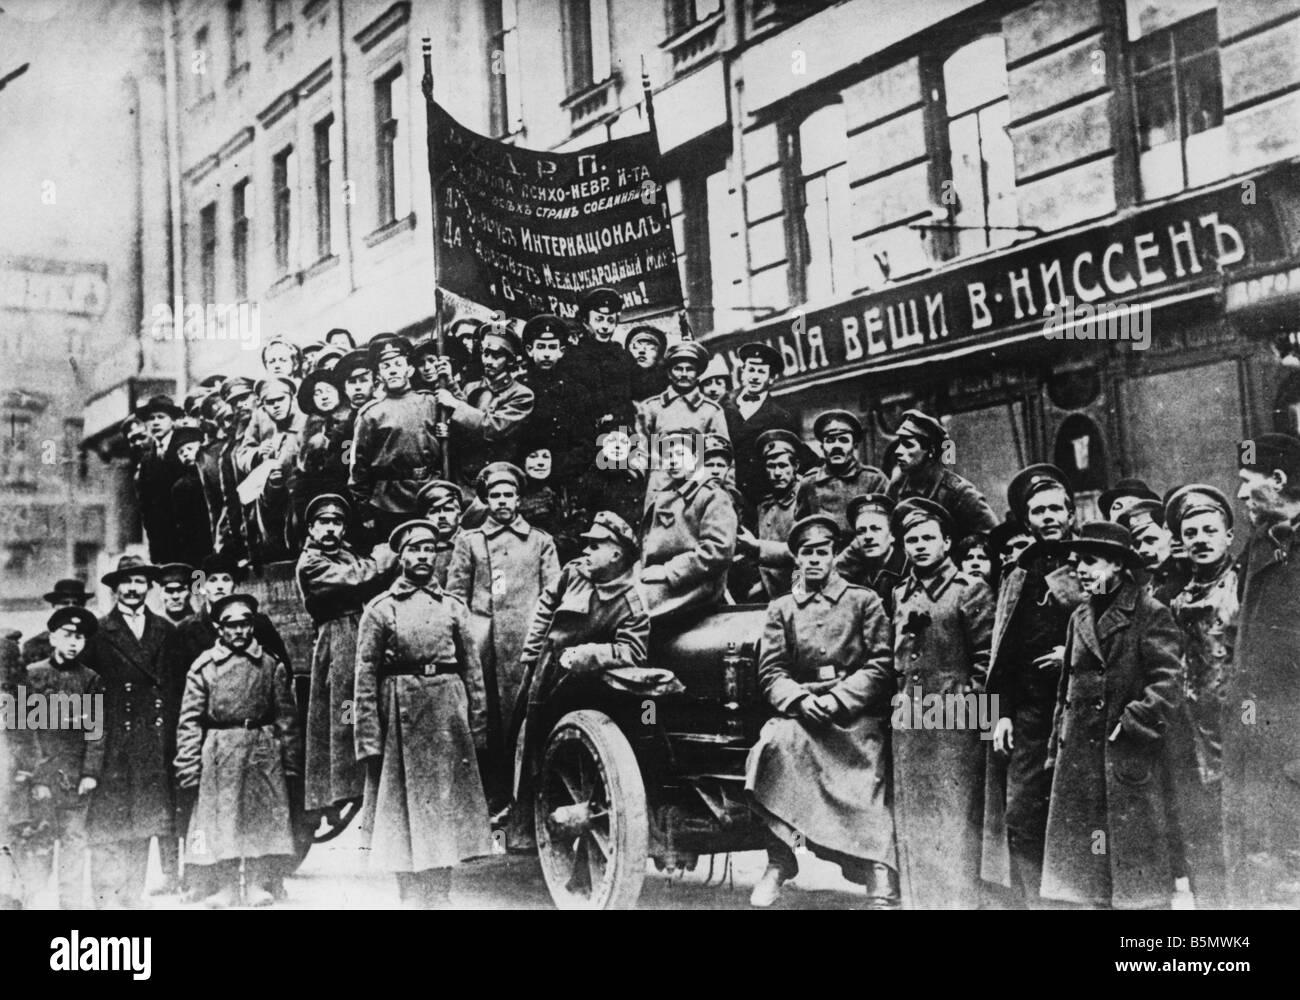 9RD 1917 0 0 A3 1 Dimostrazione della Russia 1917 Rivoluzione Russa 1917 Fotografia di dimostrazione Foto Stock